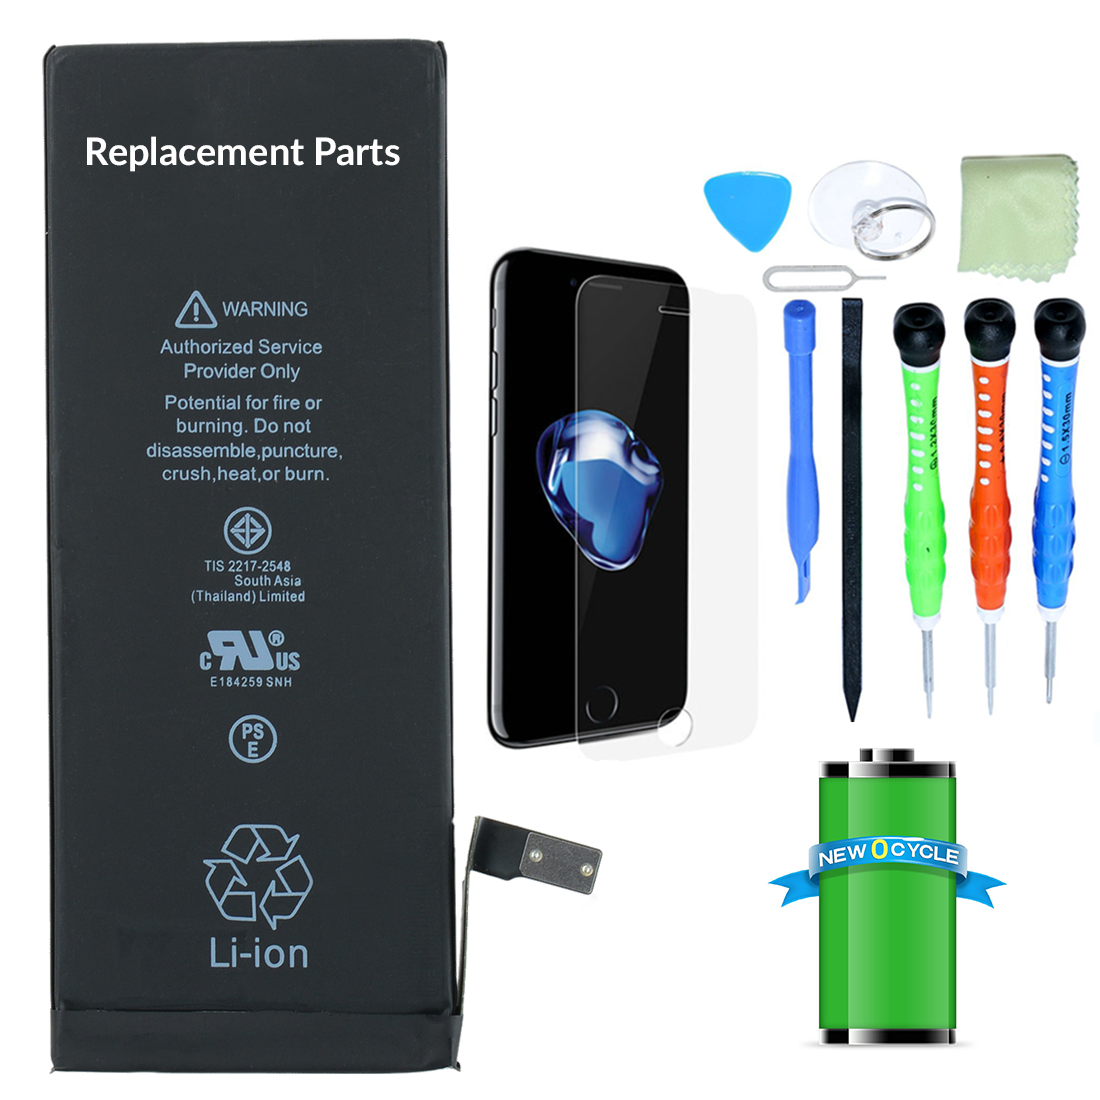 Apple iPhone Battery Repair Kit